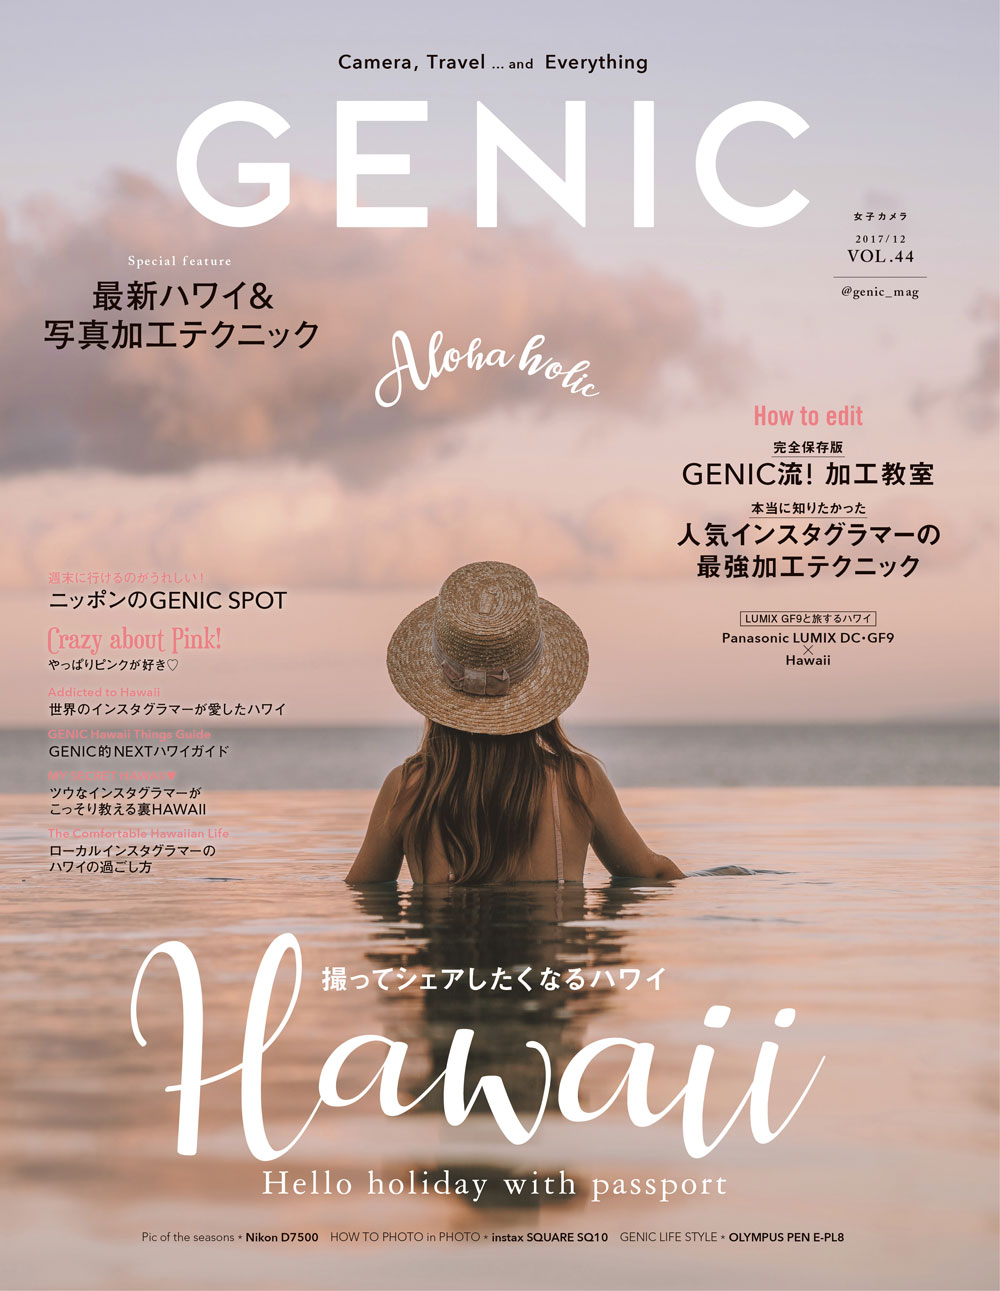 人気インスタグラマーの最強写真加工テクニック シェアしたくなる最新ハワイ を 女子 カメラgenic12月号 が大特集 ミツバチワークス株式会社のプレスリリース